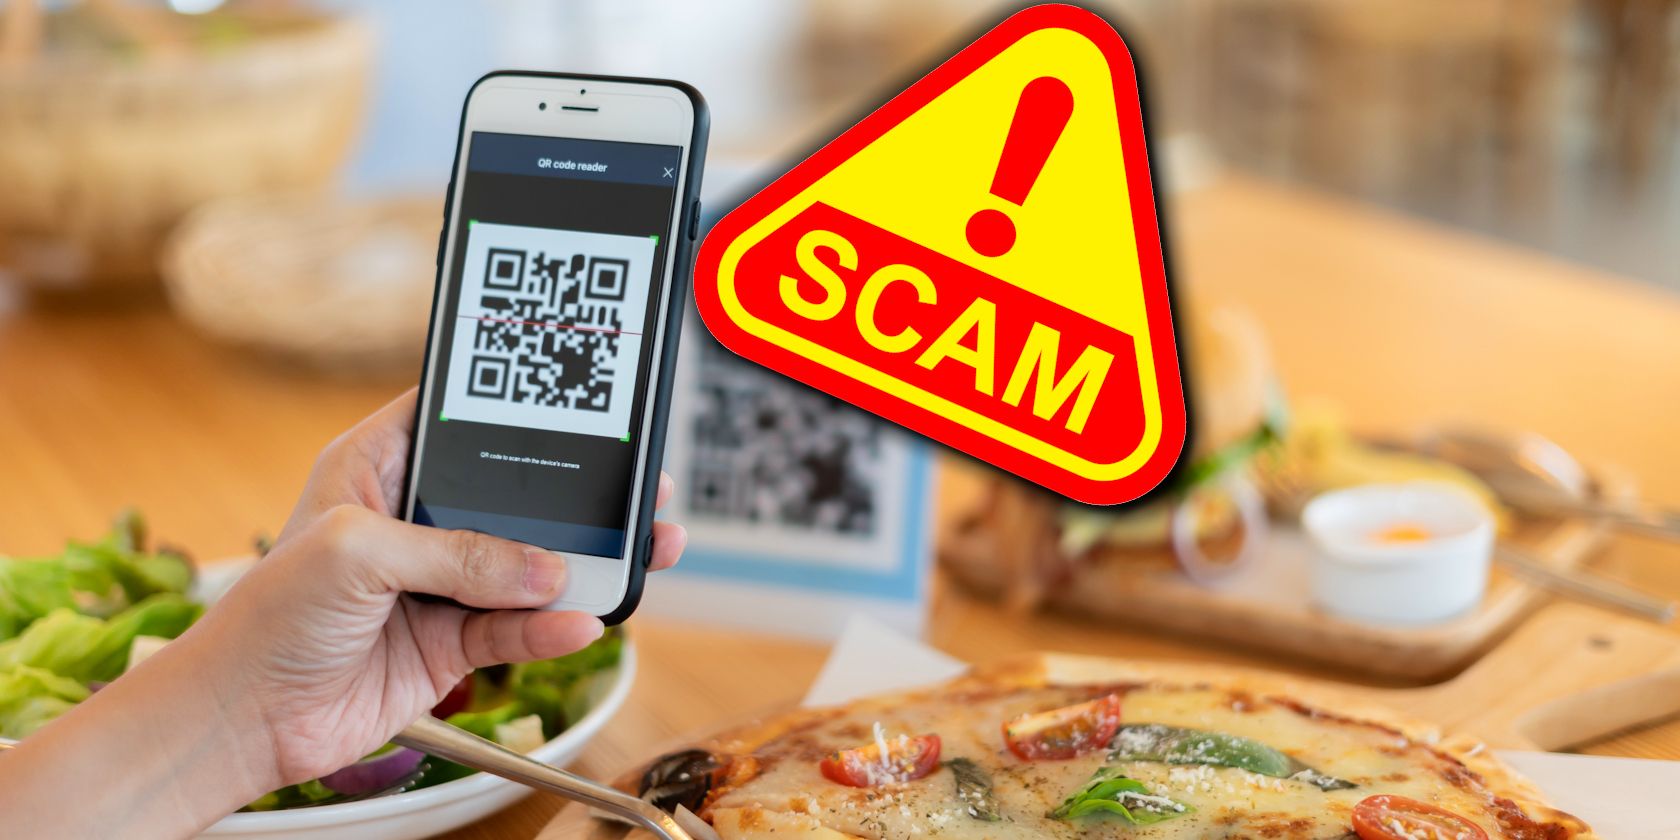 qr code phishing scam alert